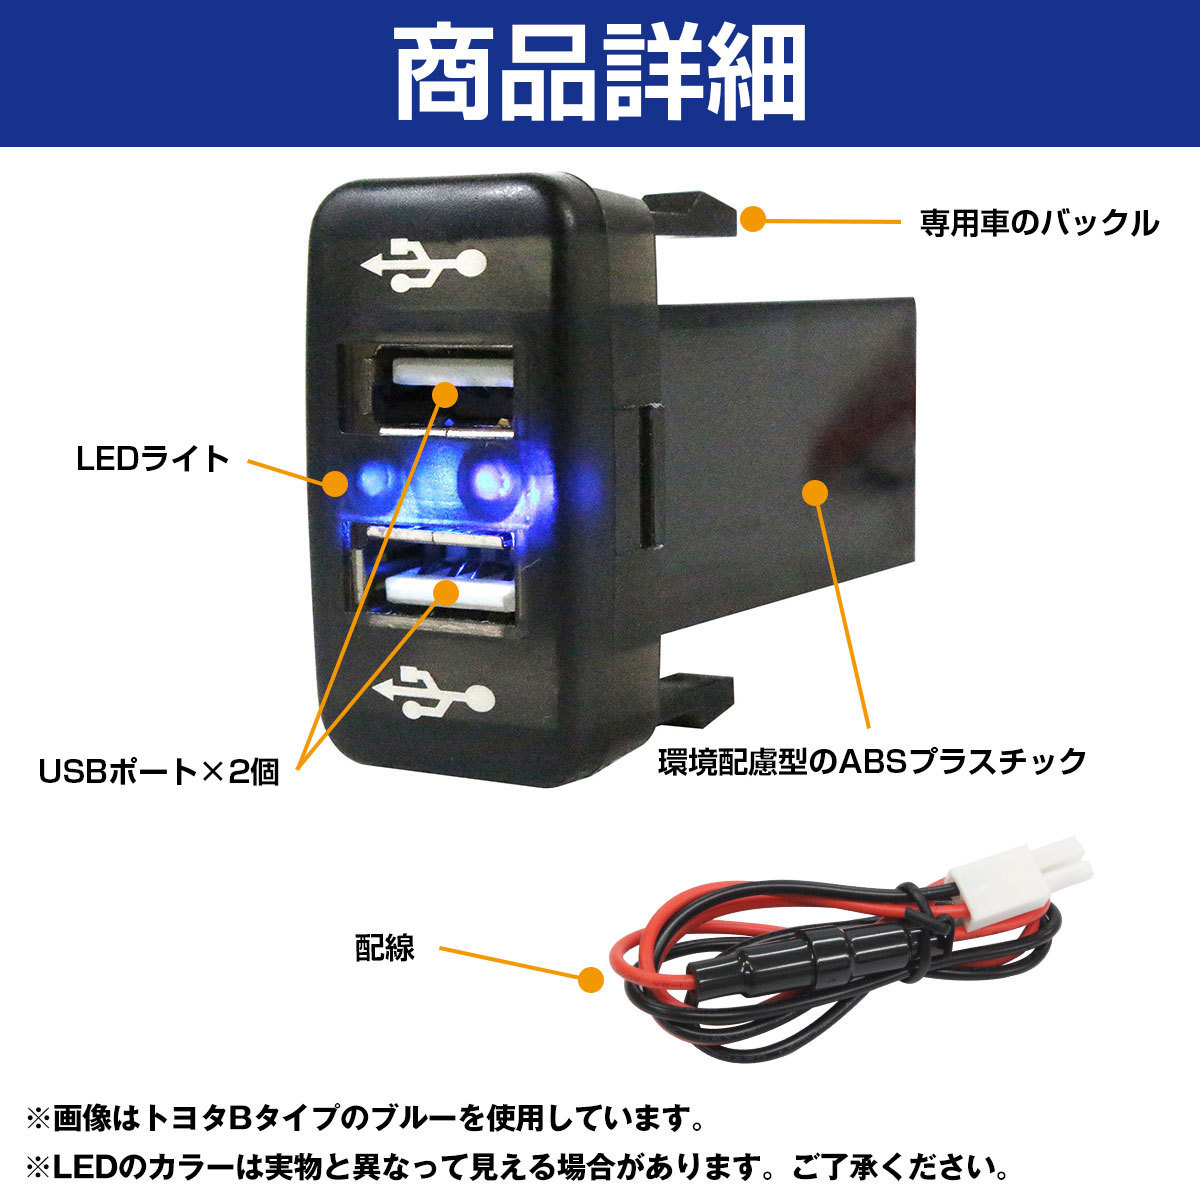 トヨタB ハイエース 200系 1型 2型 3型 LED/レッド 2口 USBポート 充電 12V 2.1A増設 パネル USBスイッチホールカバー 電源_画像3